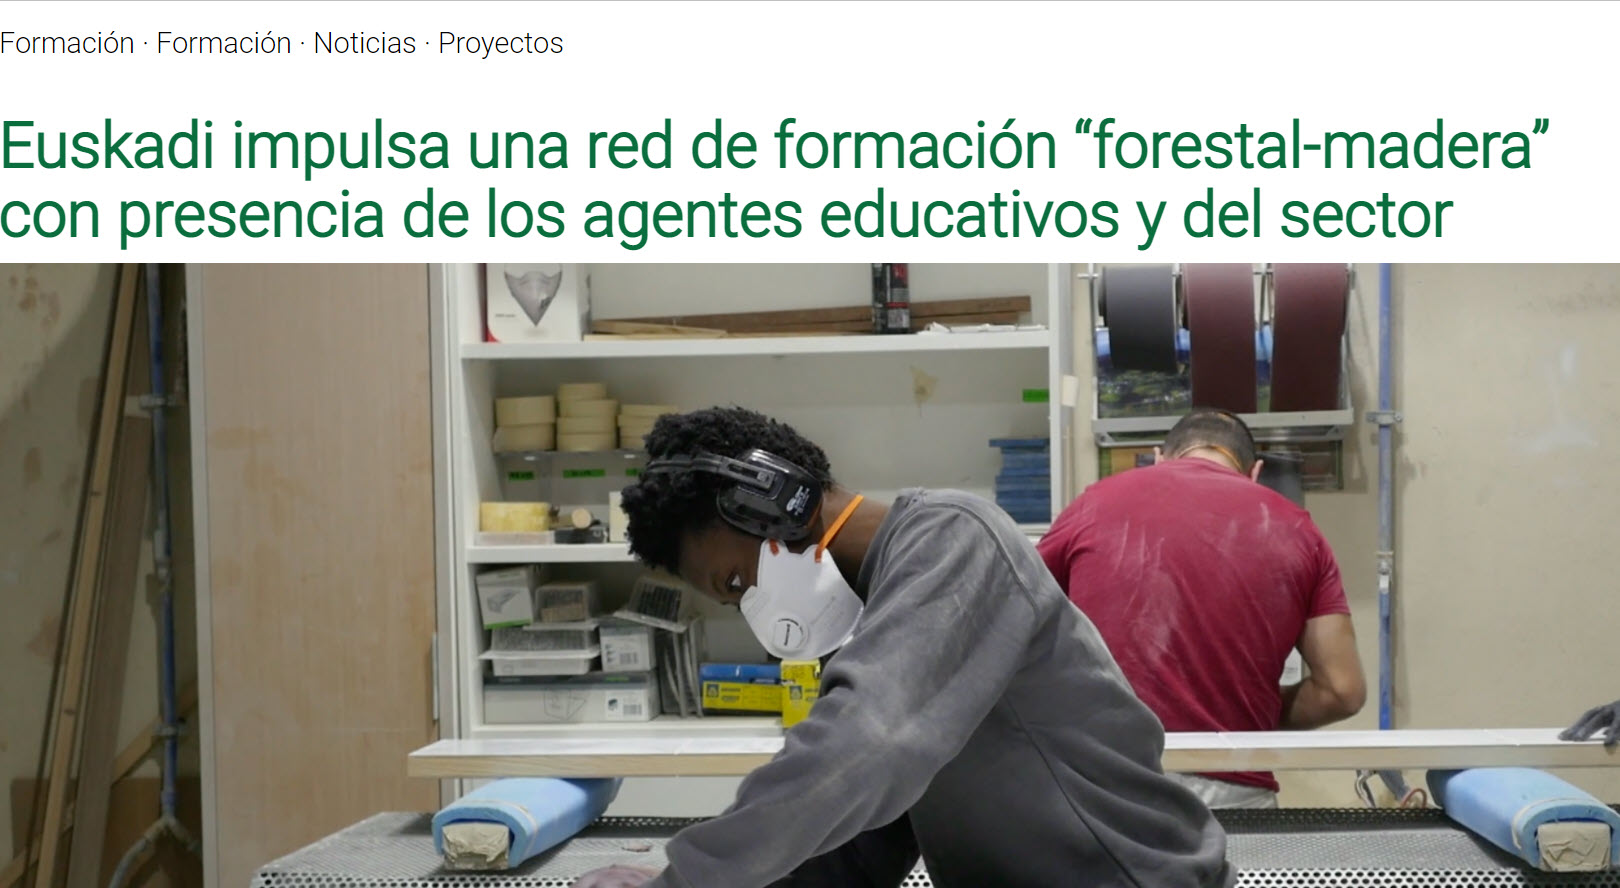 Euskadi impulsa una red de formación “forestal-madera”